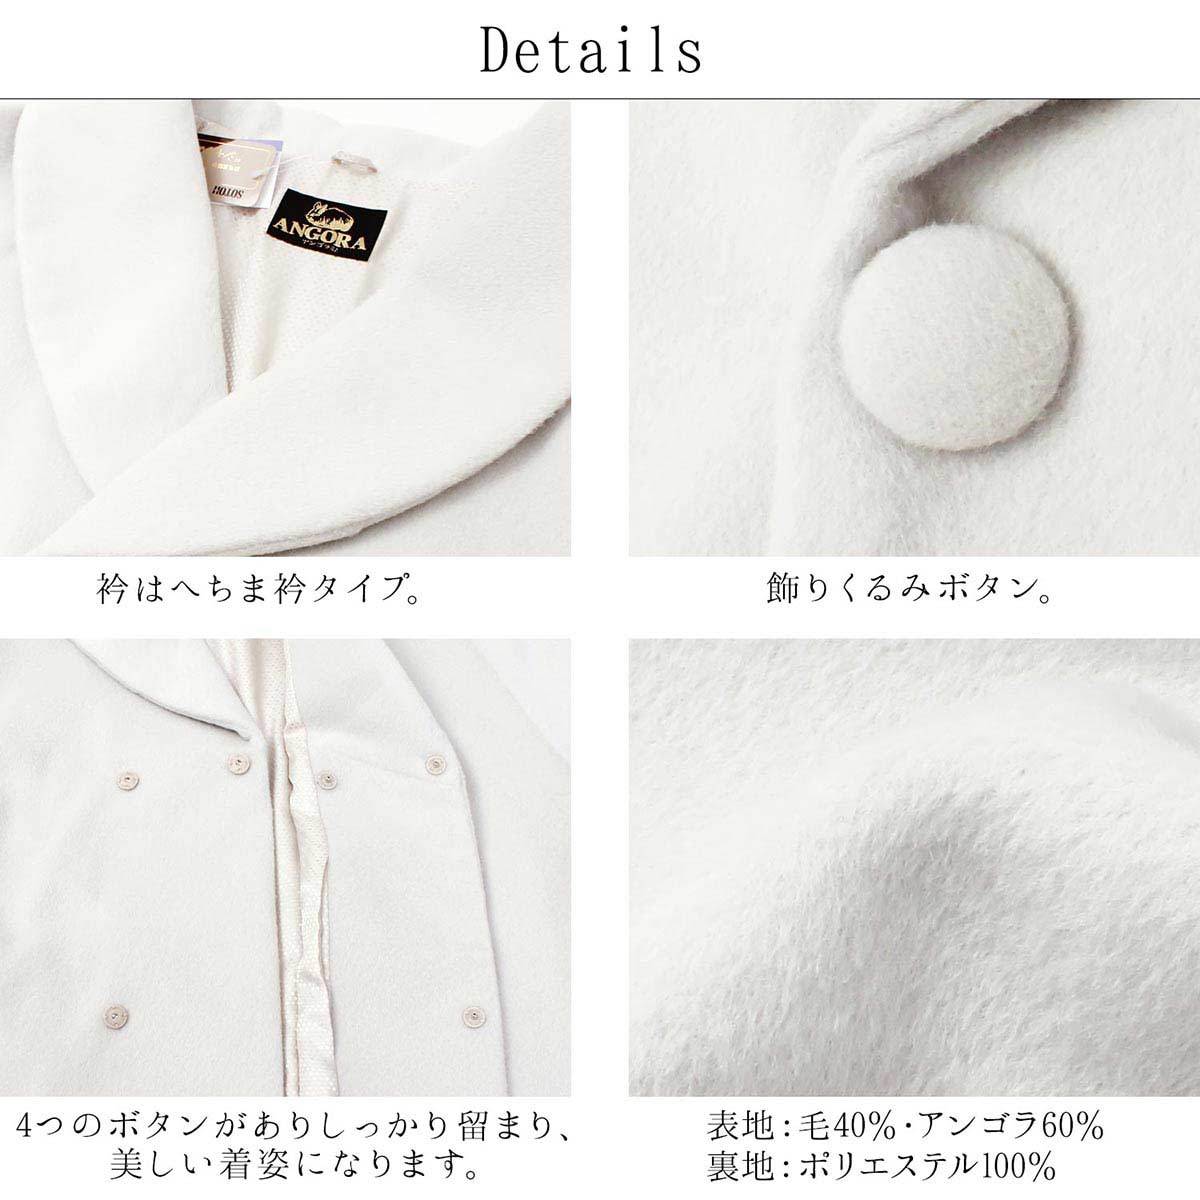 日本製 レディース 和装コート アンゴラ混 へちま衿コート 全4色 オフホワイト ベージュ キャメル ブラック 着物コート 婦人 アウター コート